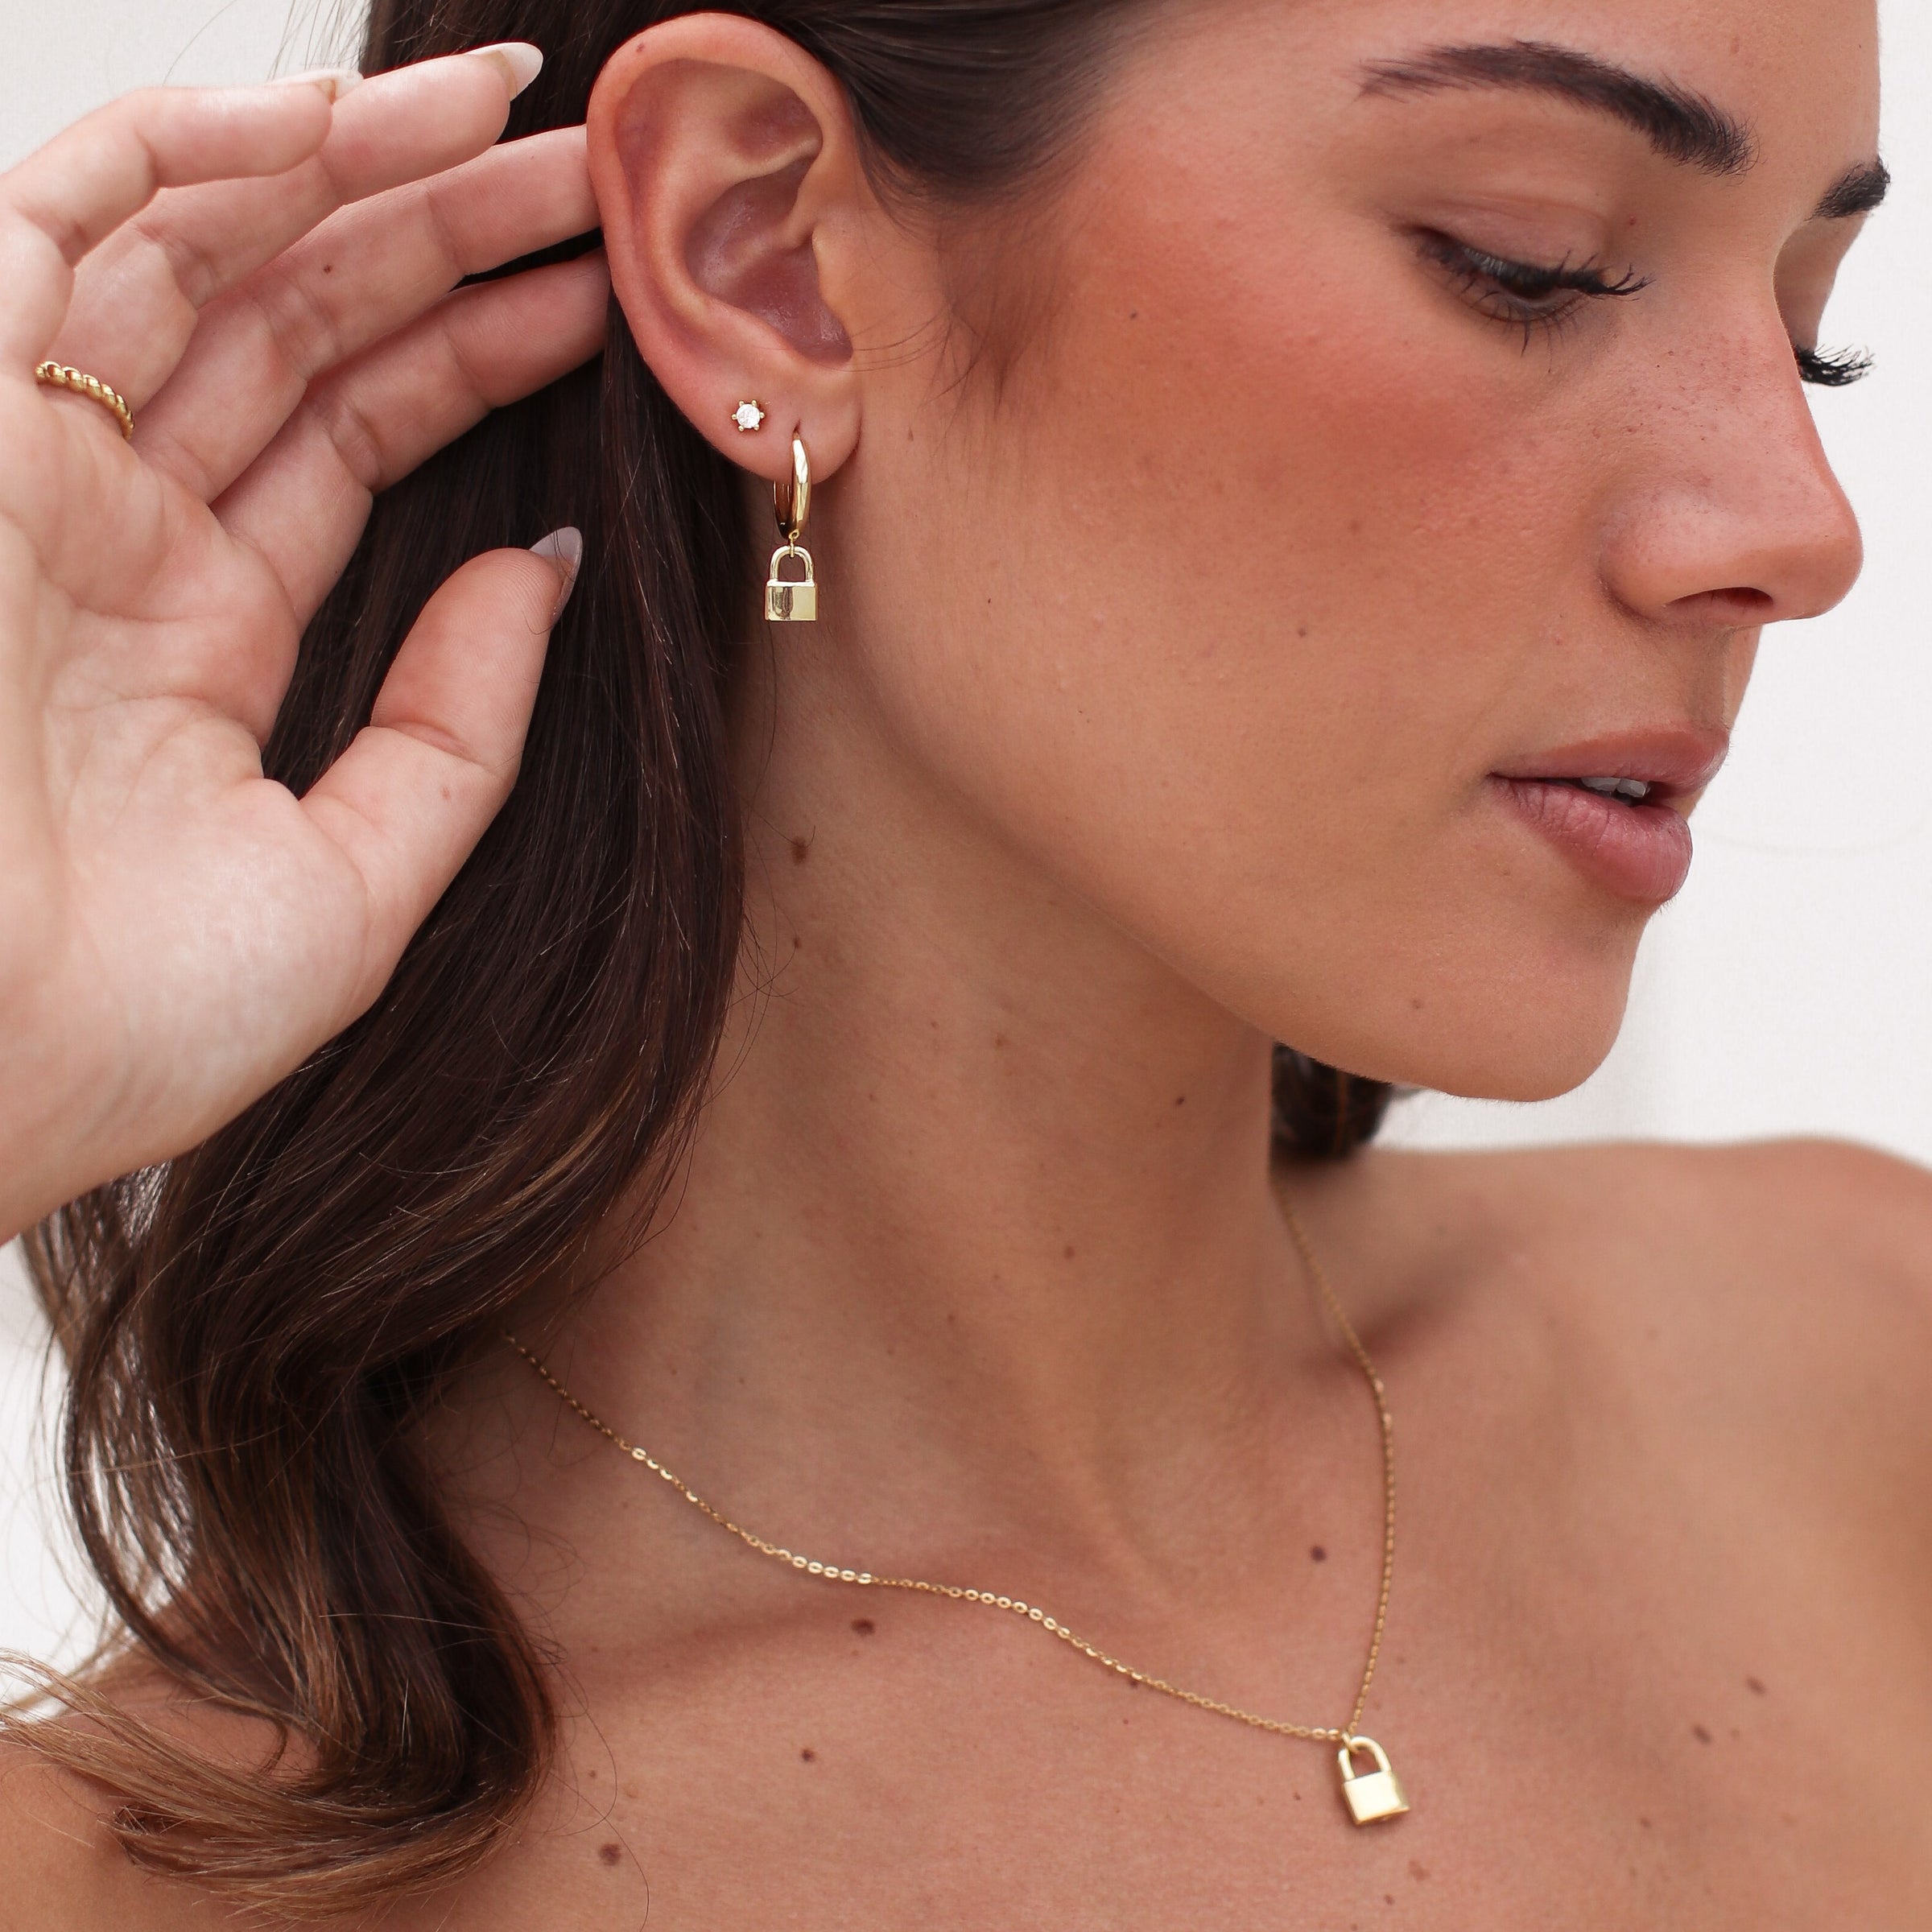 Gold Key Lock Hoop Earring Hoops Endless Huggies Dangle Simple Earrings  Everyday/gift for Her - Etsy